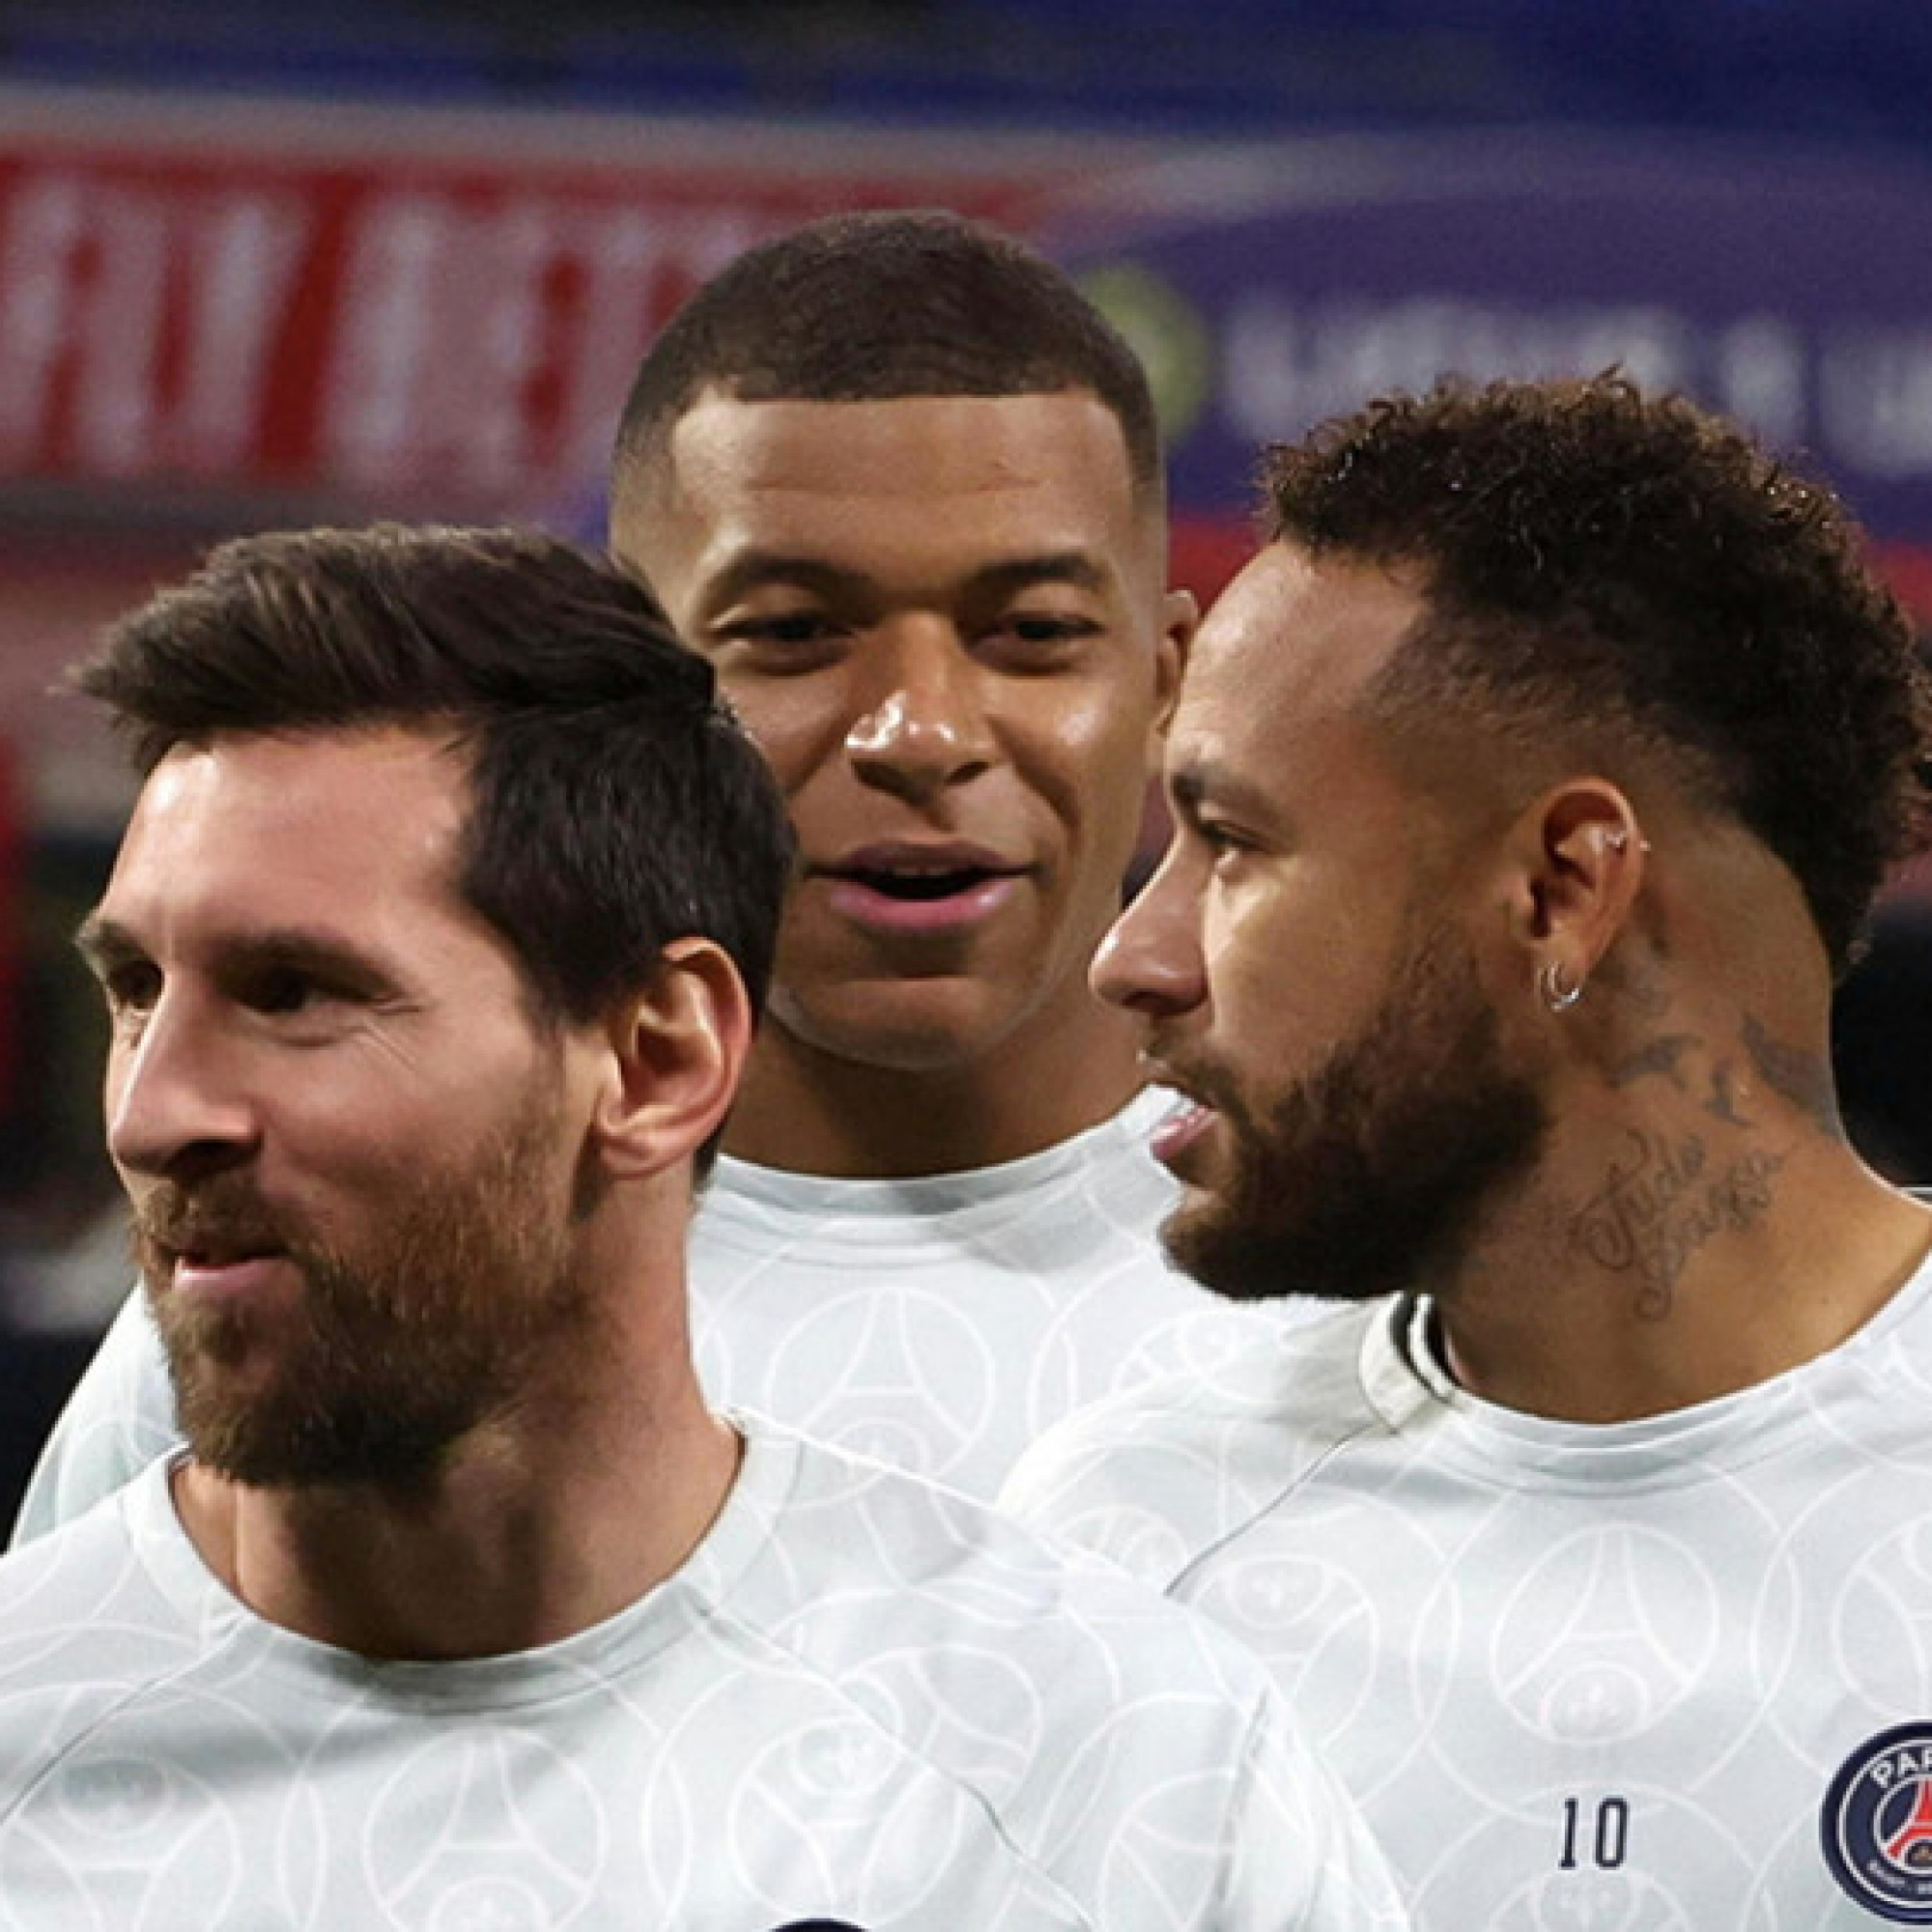 PSG dậy sóng: Mbappe đòi đuổi Neymar "cho khuất mắt", Messi ra tay hòa giải